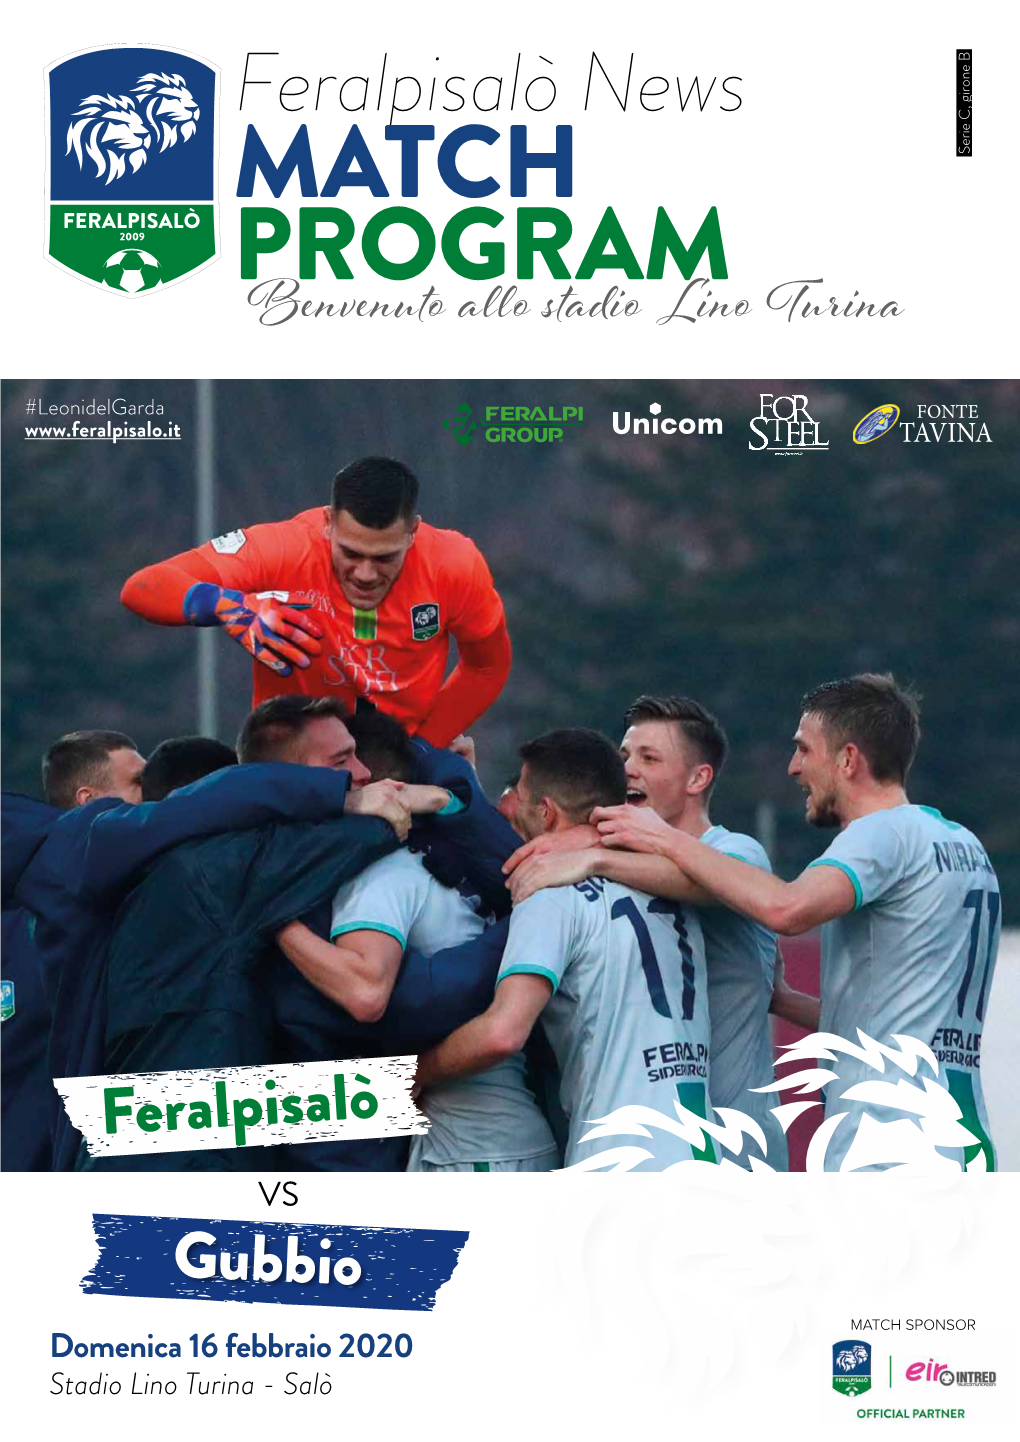 Match Program 19/20 - 11 Modena 37 25 10 7 8 28 23 Rivista Della Feralpisalò S.R.L